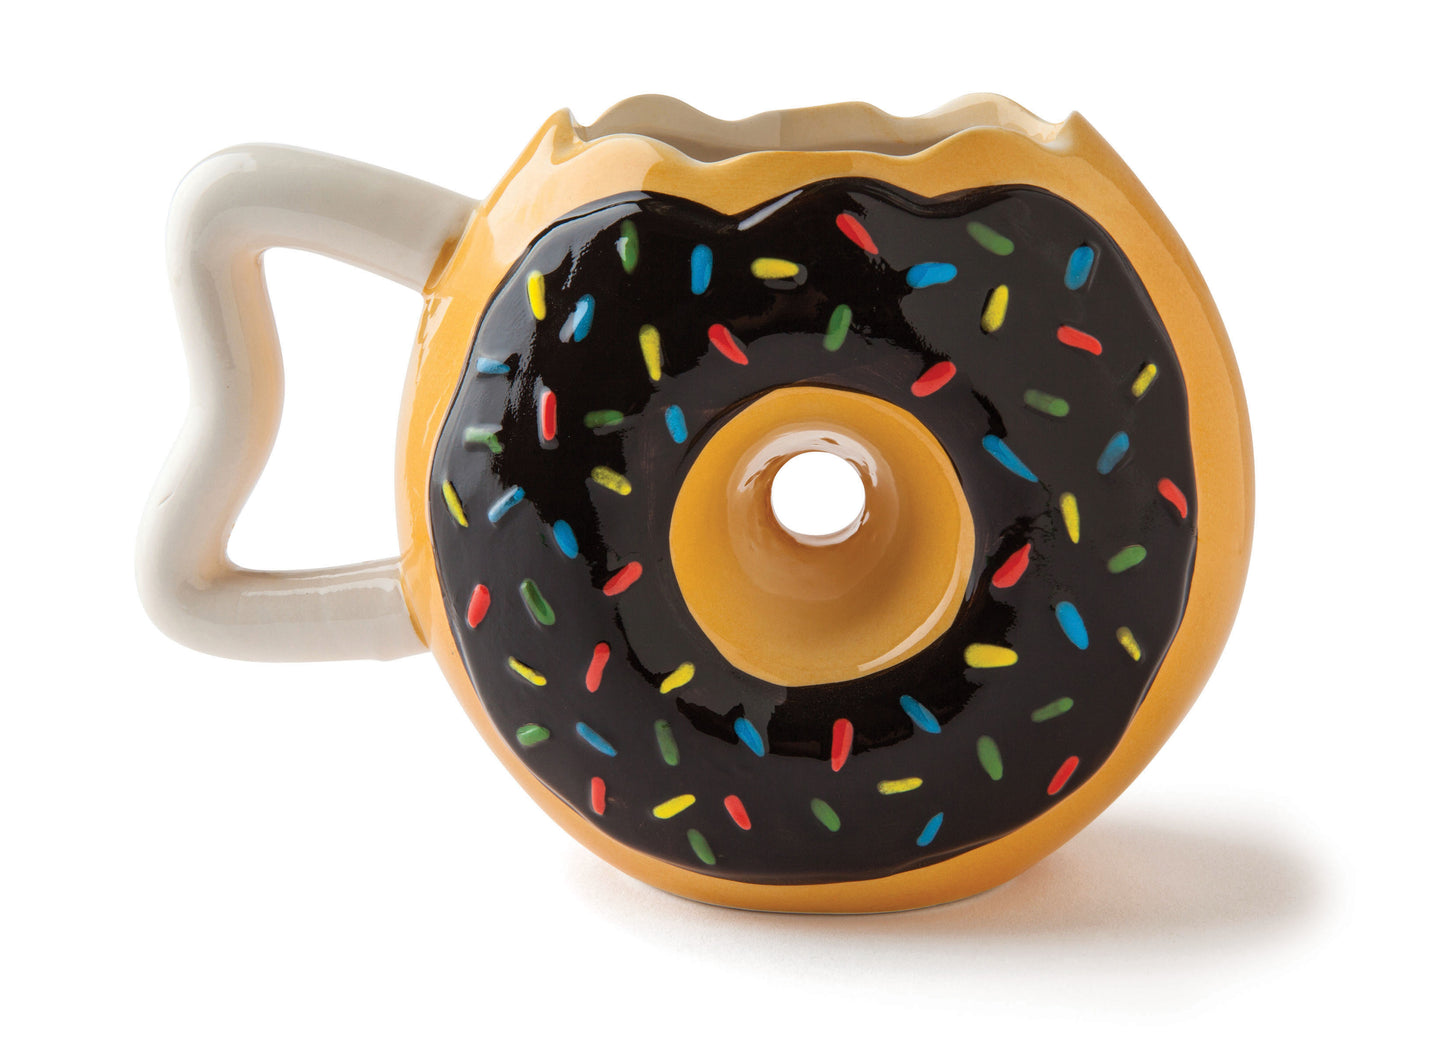 Donut Mug